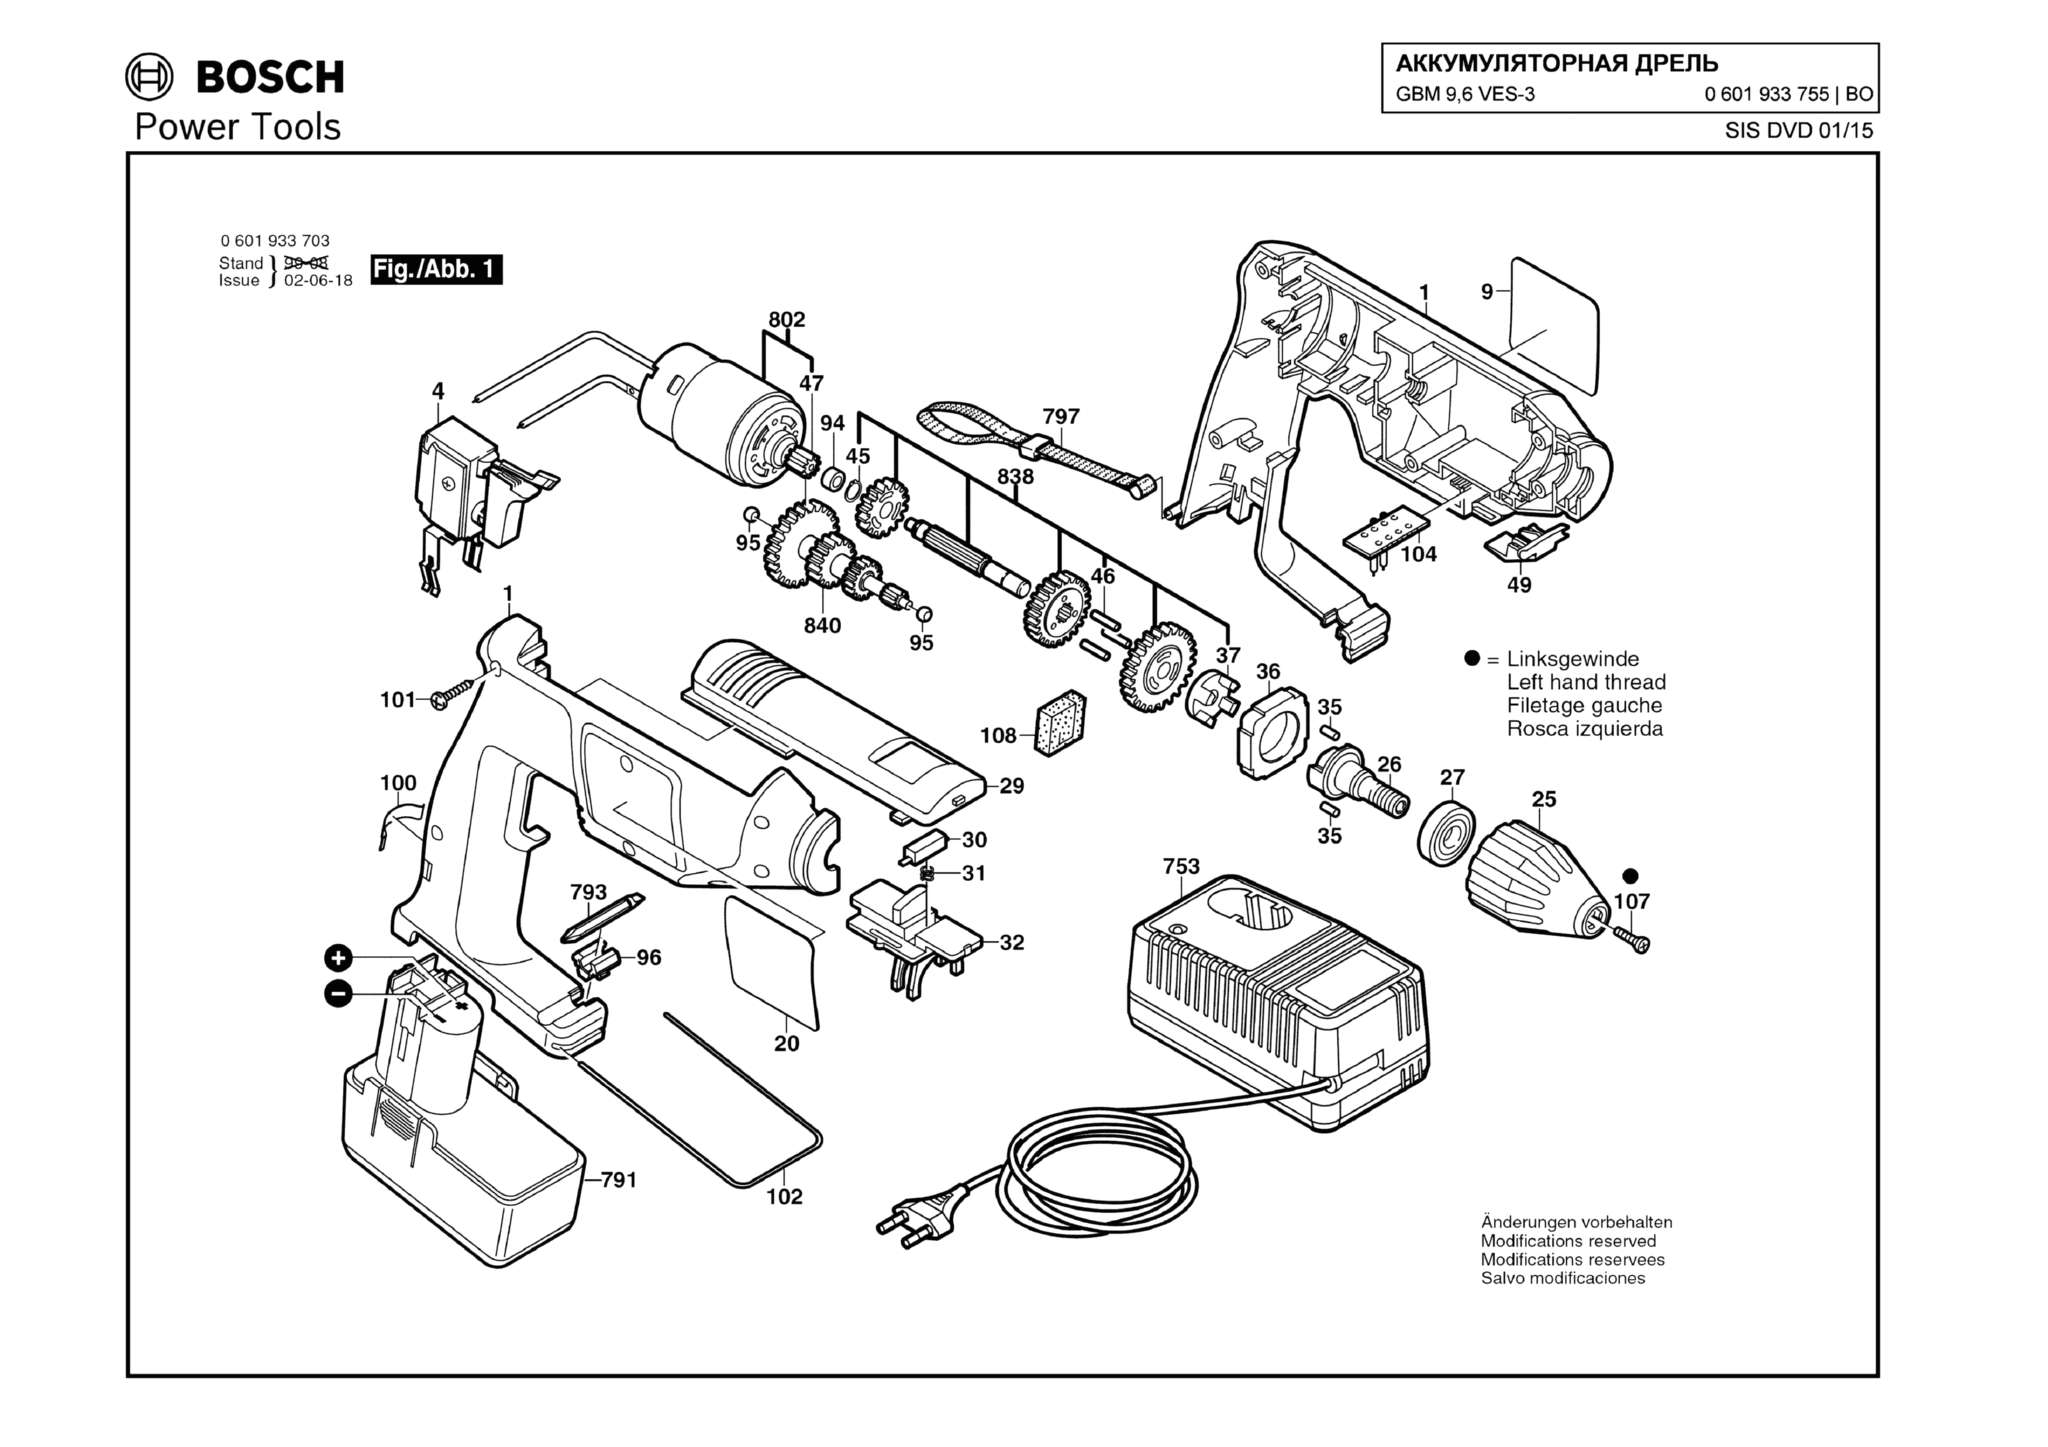 Запчасти, схема и деталировка Bosch GBM 9,6 VES-3 (ТИП 0601933755)